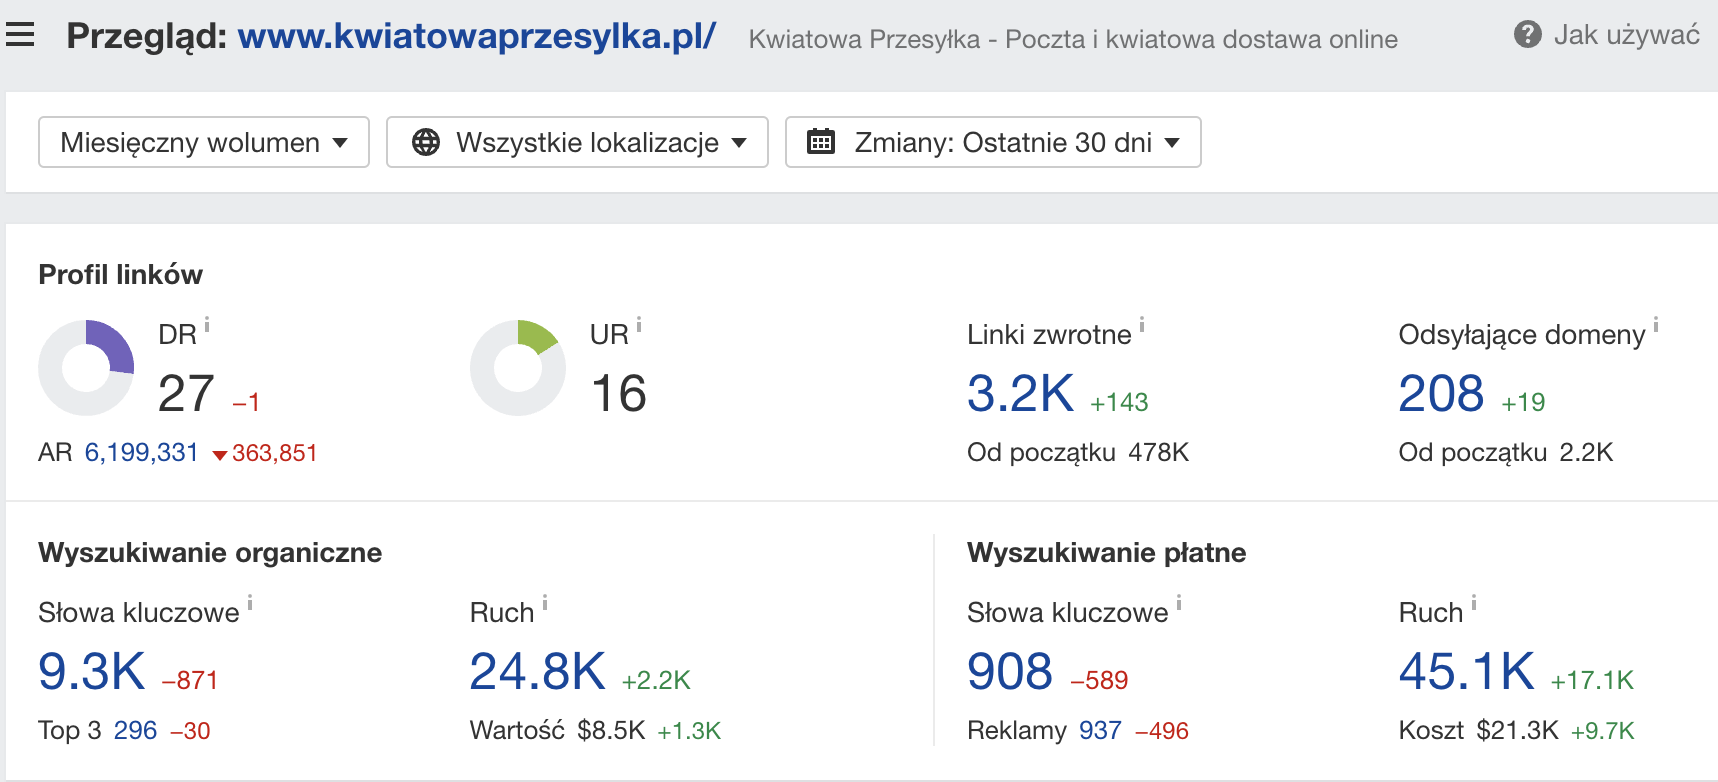 kwiatowaprzesylka.pl: informacje o domenie